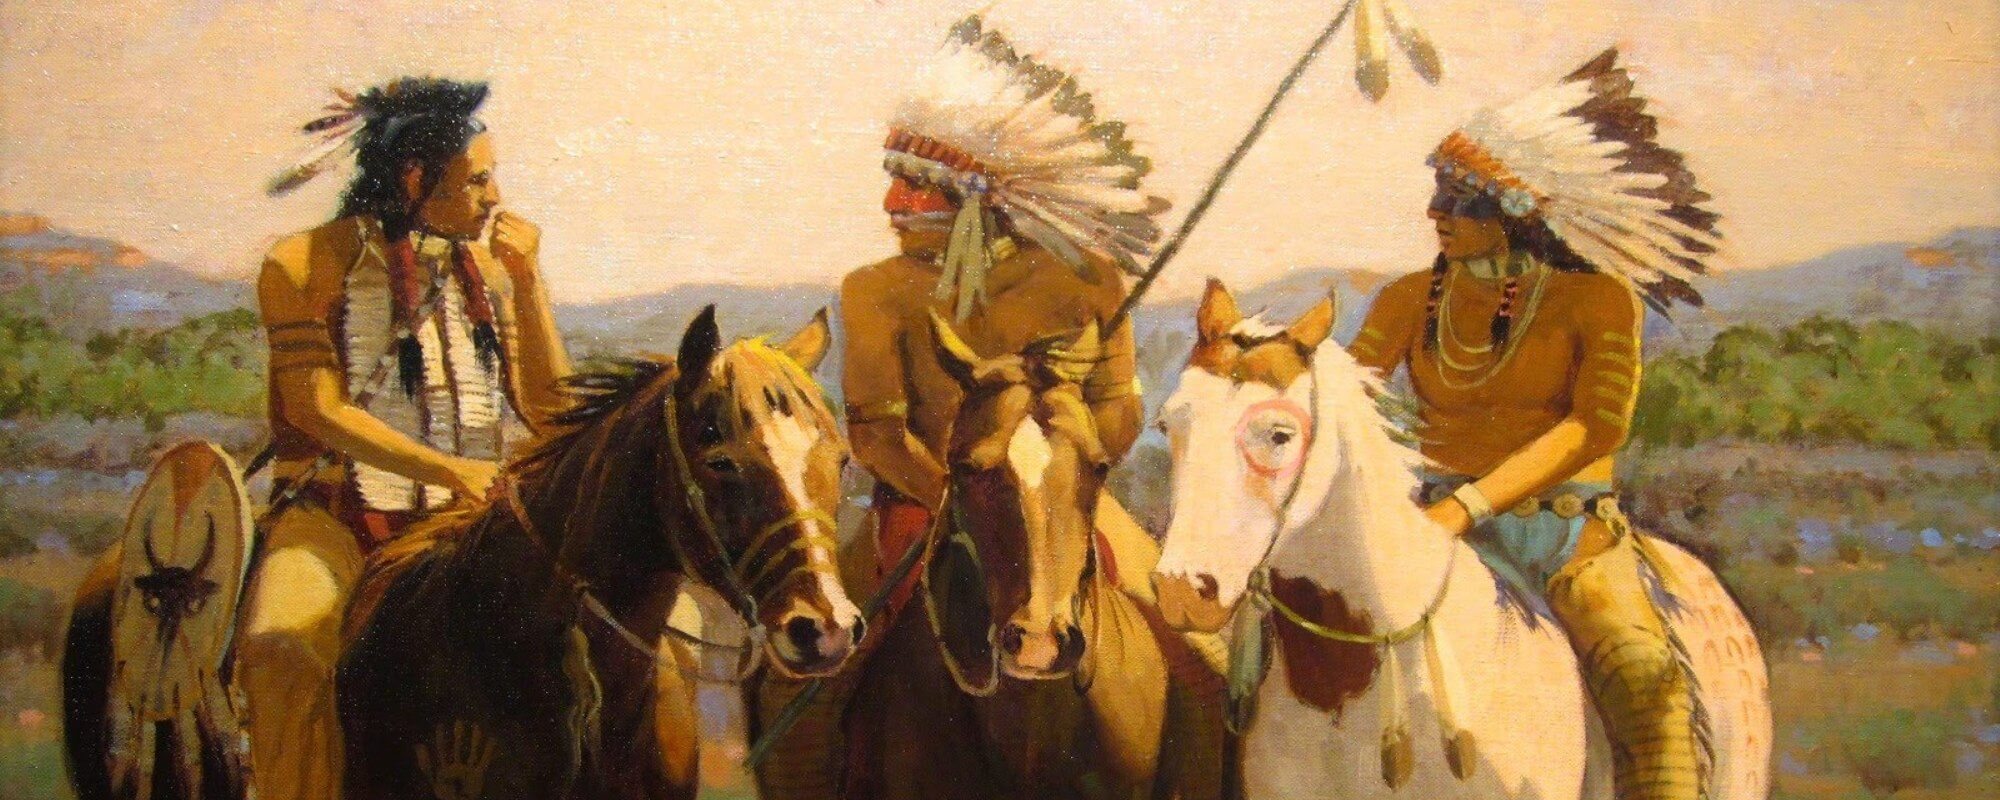 apache-indians